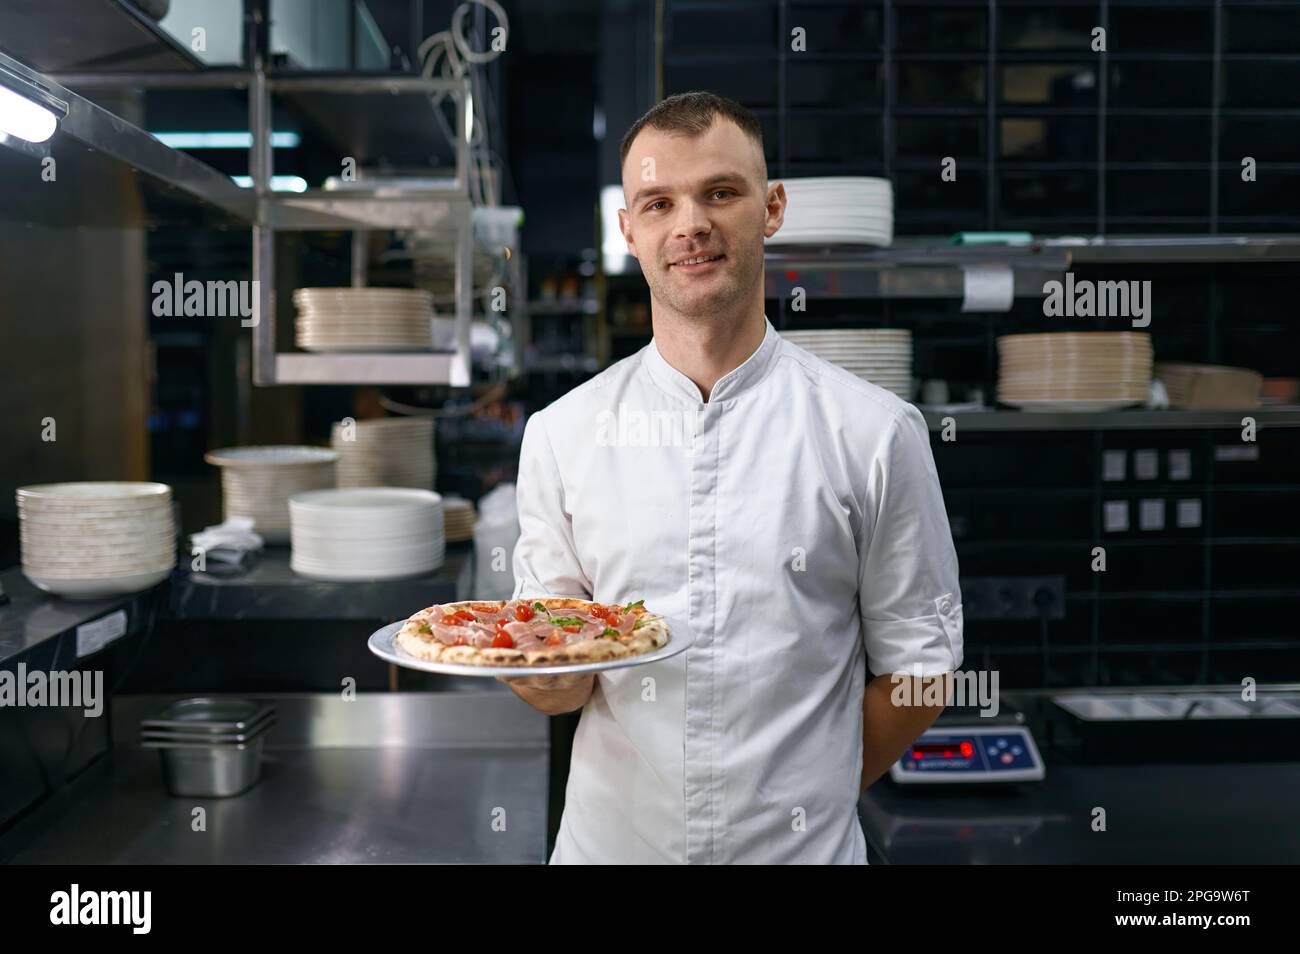 Retrato de pizzaiolo masculino presentando pizza recién cocinada Foto de stock